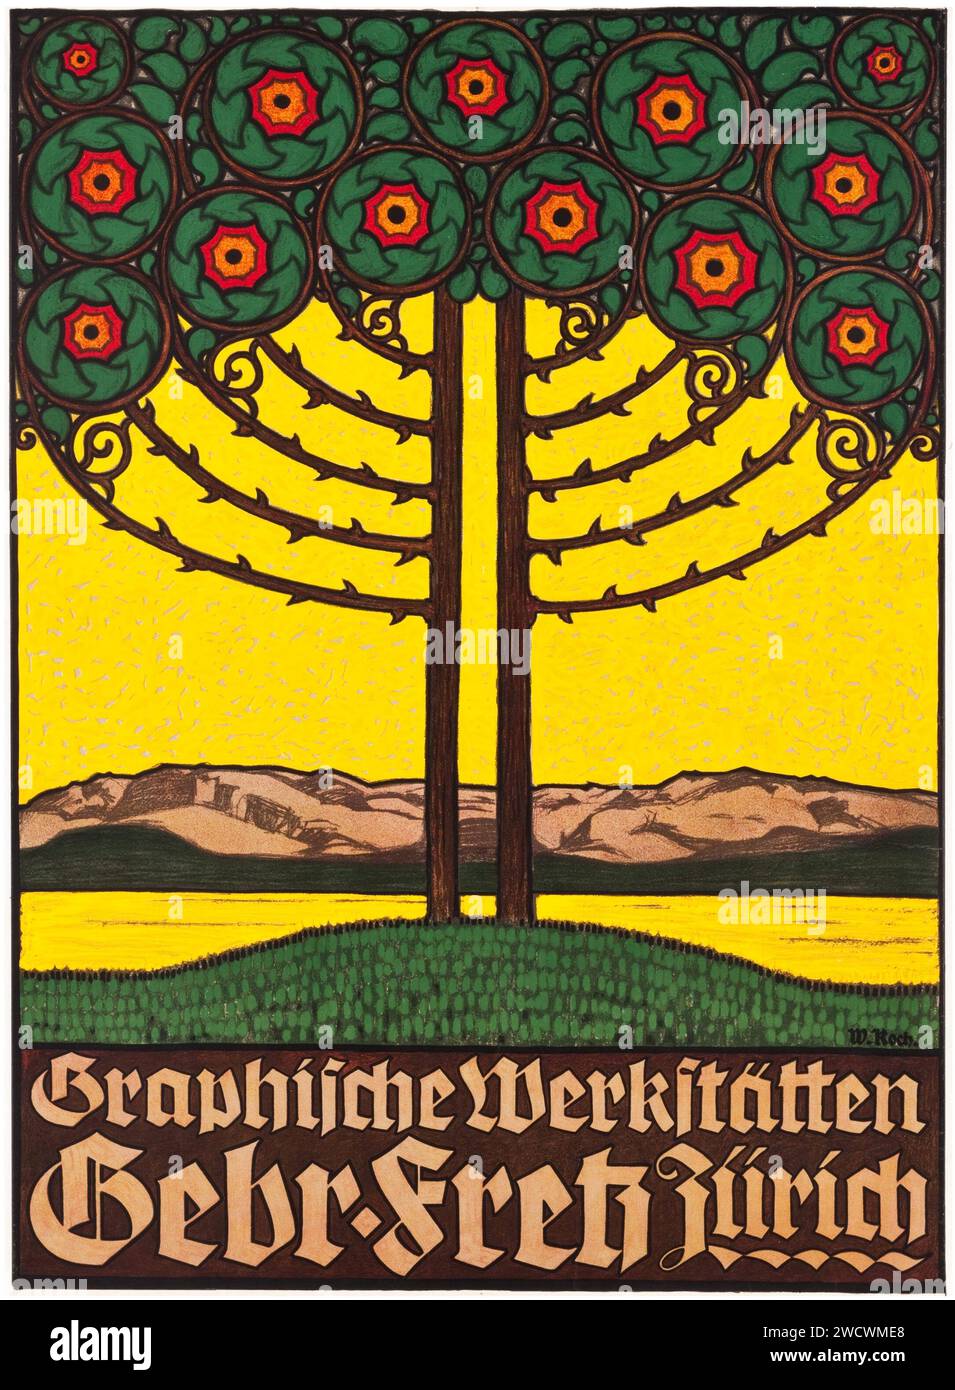 Fritz Brothers Graphics Workshop (Anfang der 1900er Jahre). Schweizer Werbeplakat - W Koch Kunstwerk - jugendstil / jugend. Stockfoto